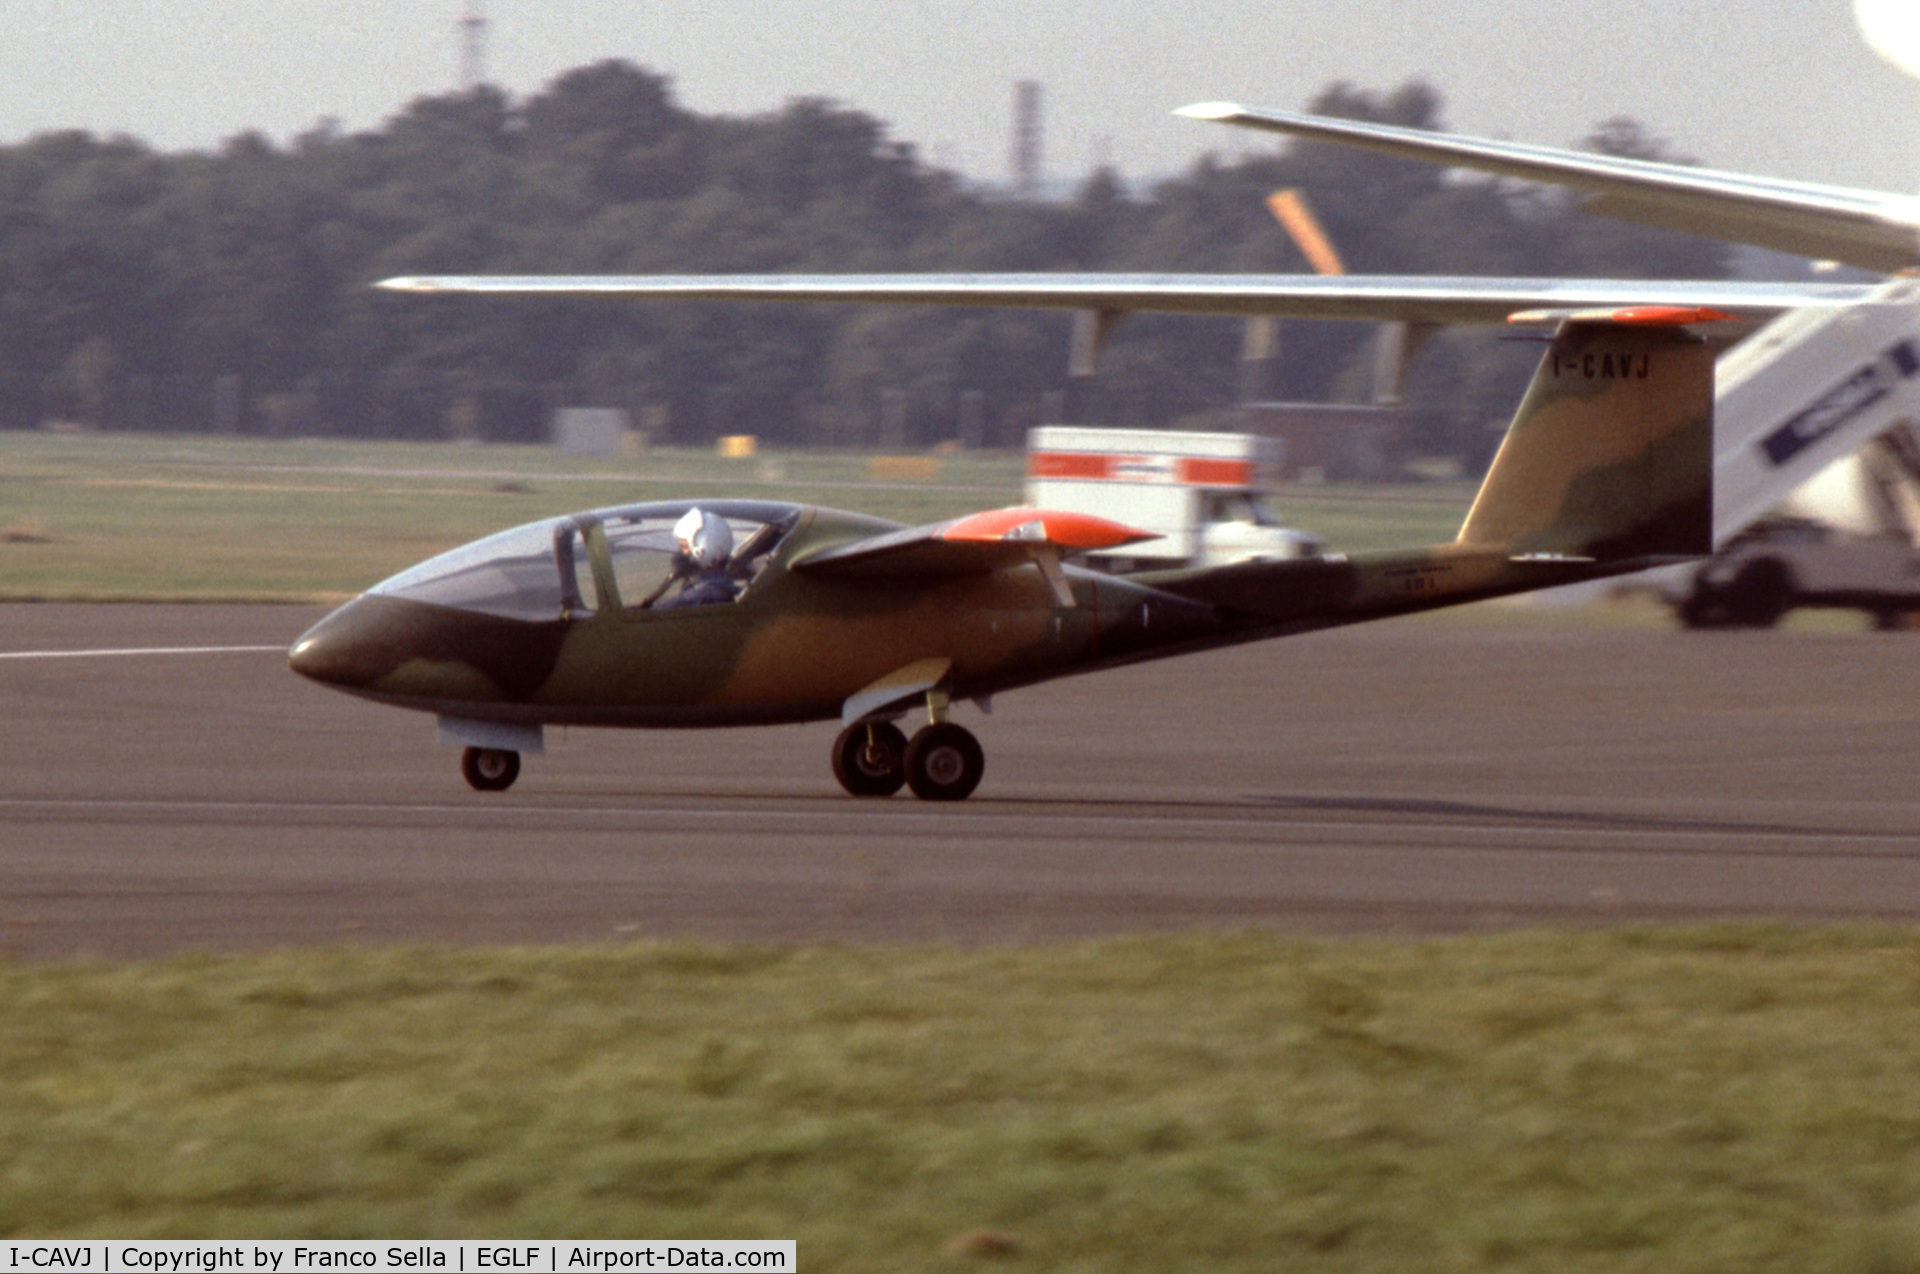 I-CAVJ, 1980 Caproni Vizzola C22J Ventura C/N 001, Caproni C22J Prototype at the 1982 Farnborough Air Show